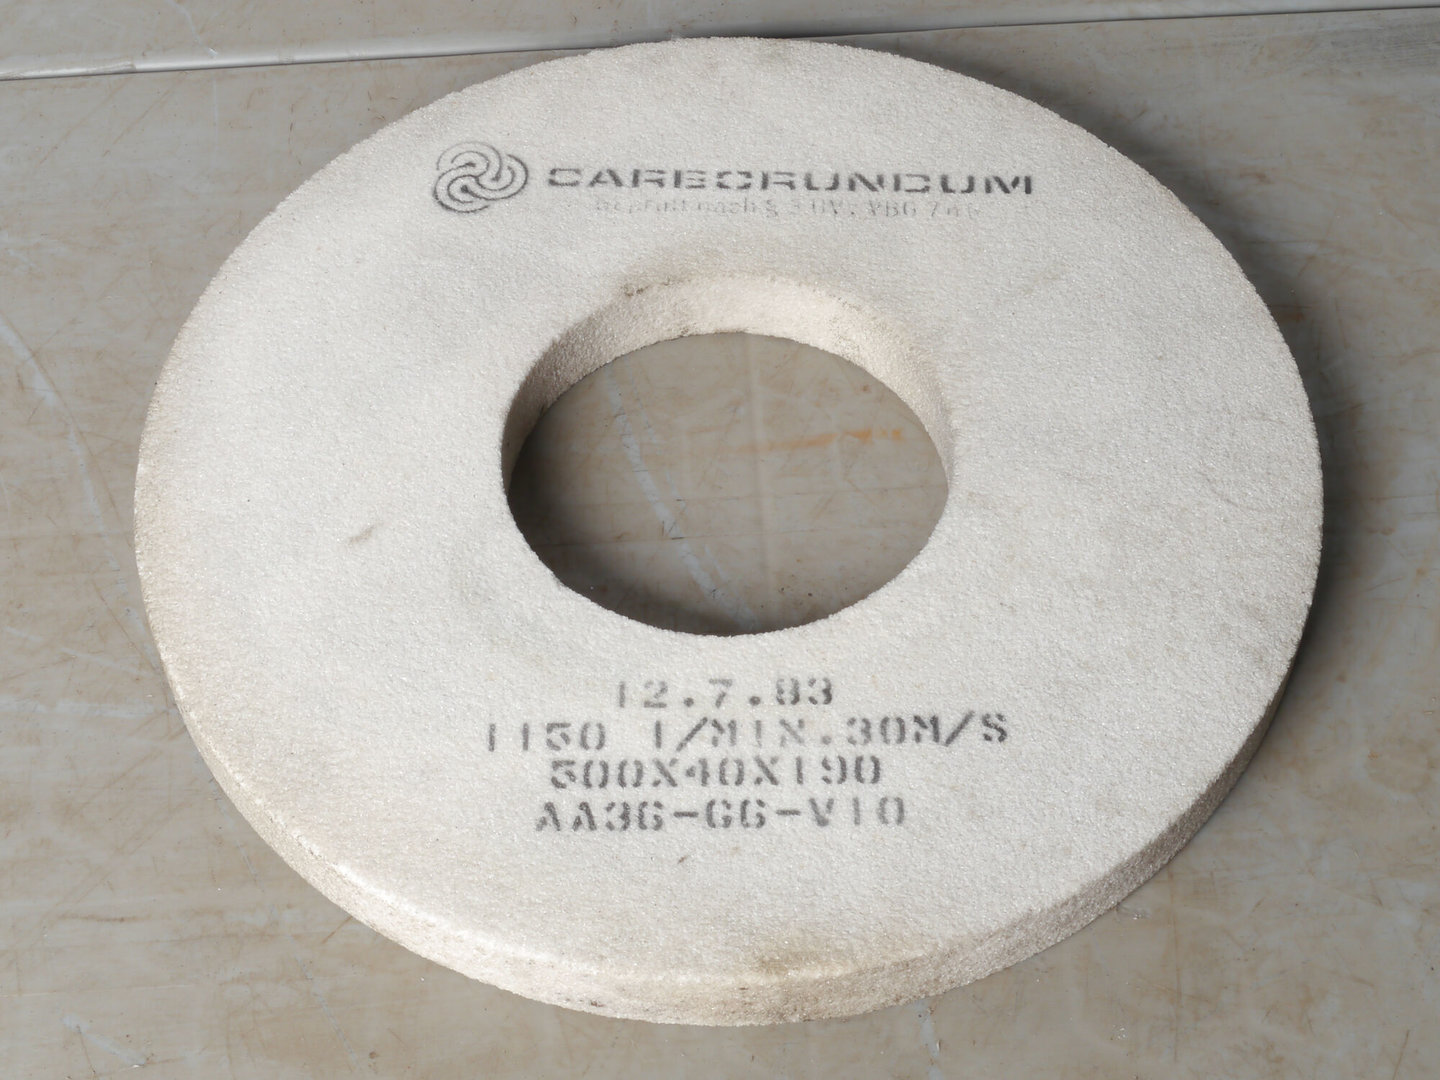 Platte slijpsteen voor slijpmachine van het merk Carborundum